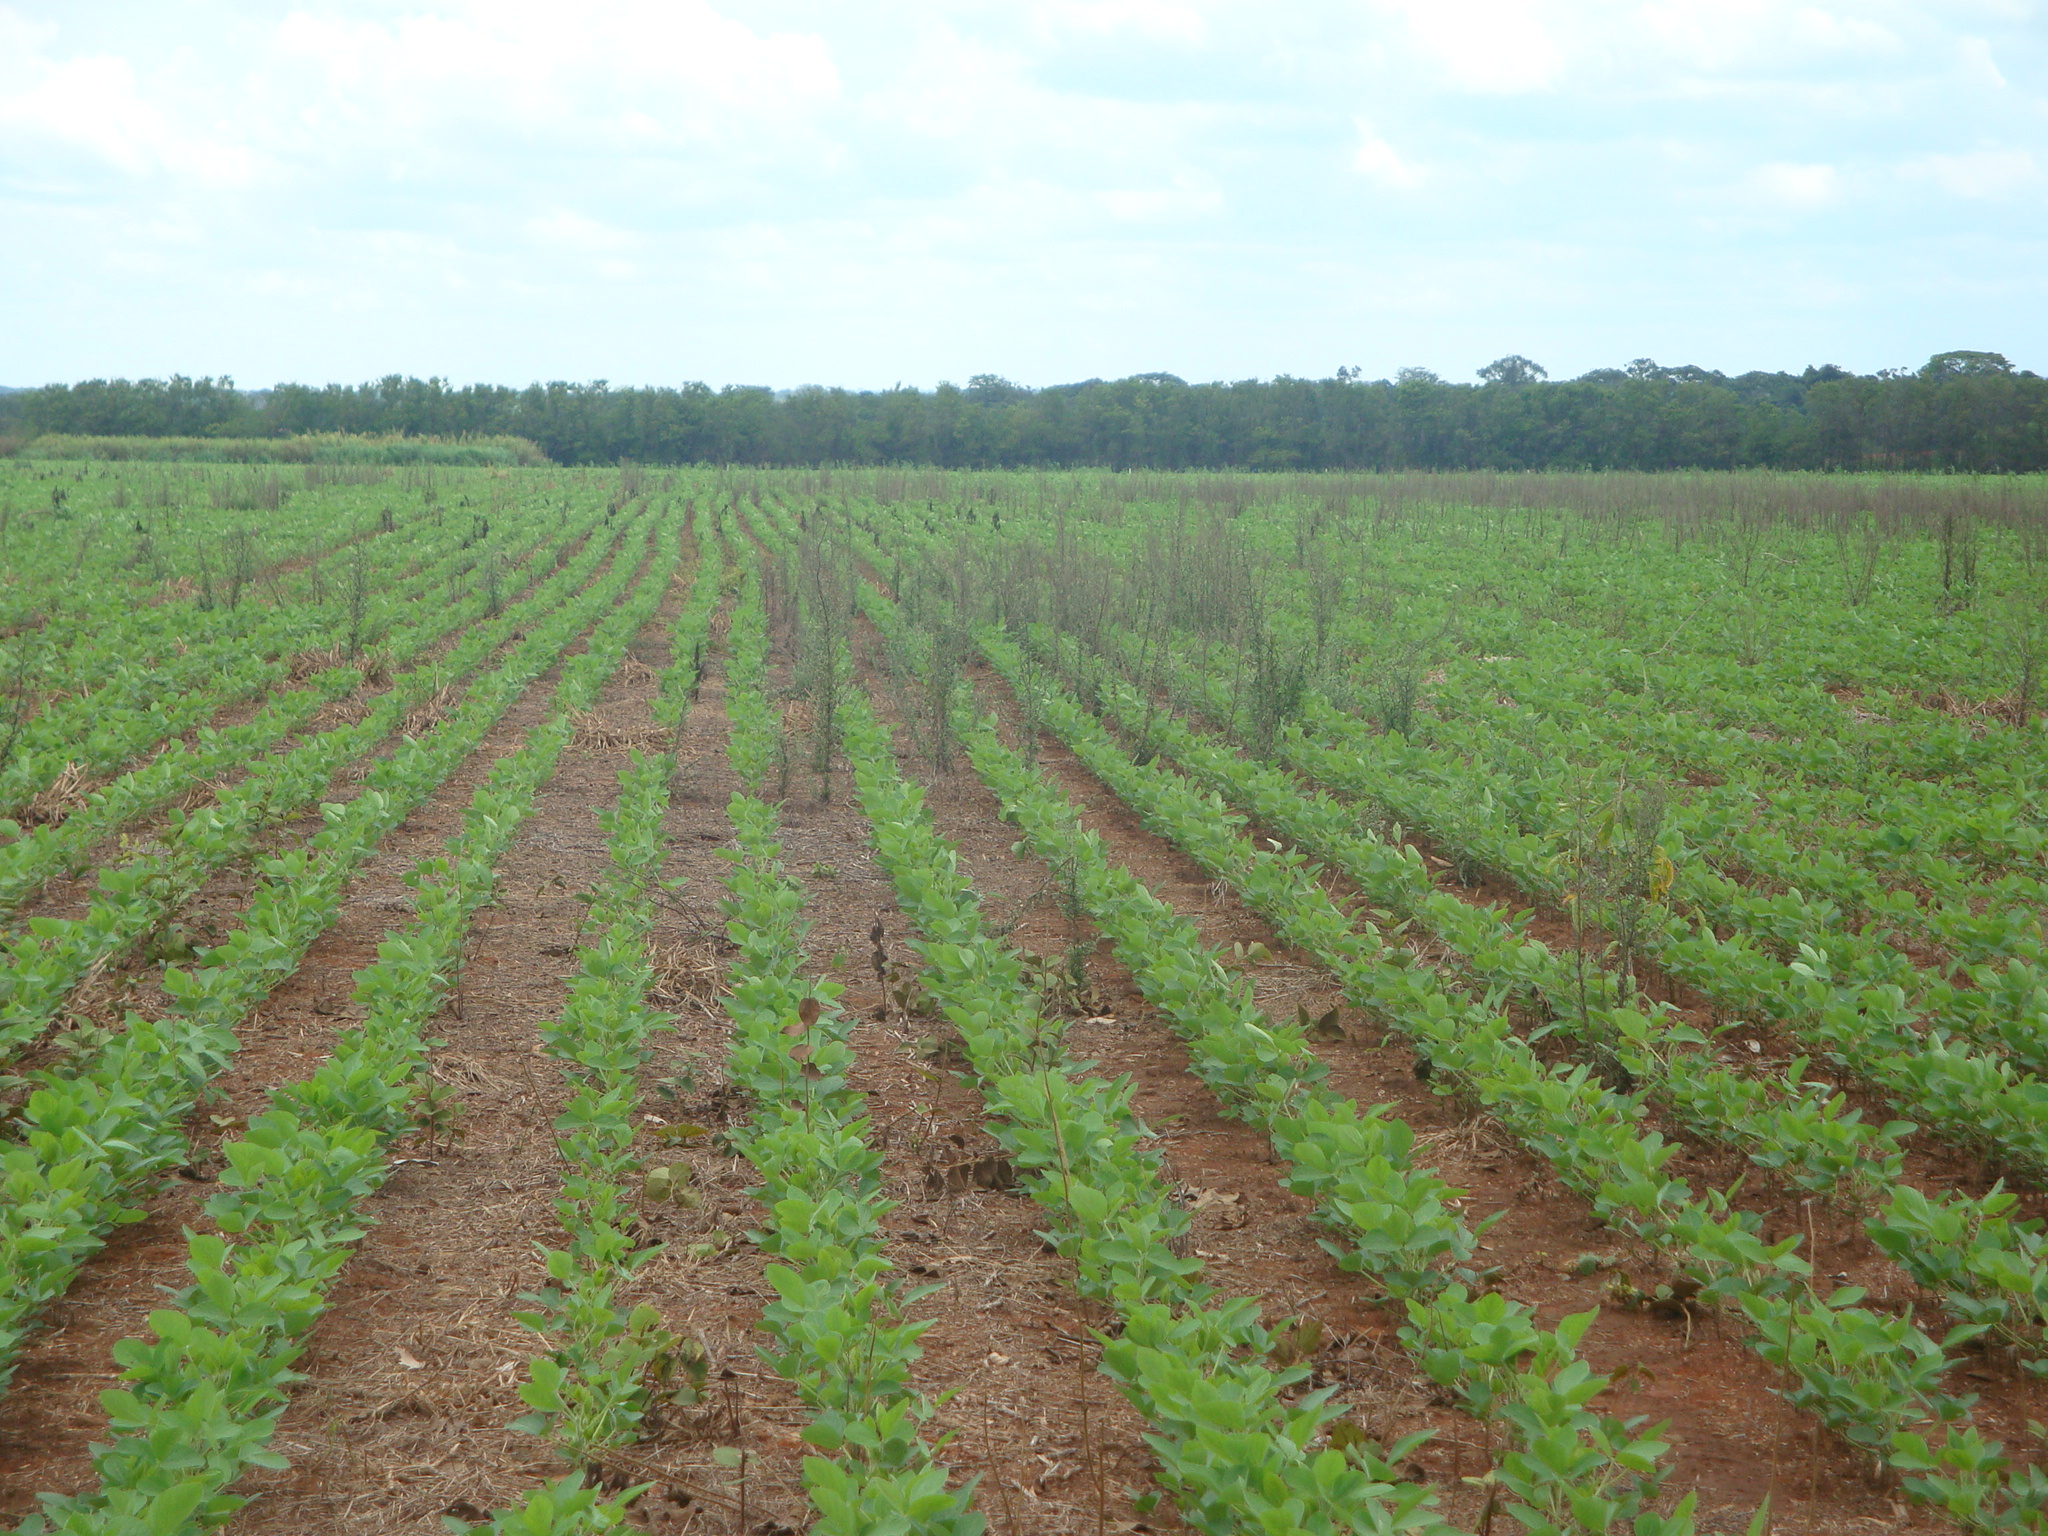 A incidência de buva em lavouras de soja representa um grande desafio, uma vez que são poucos os herbicidas pré e pós-emergentes eficazes no controle.